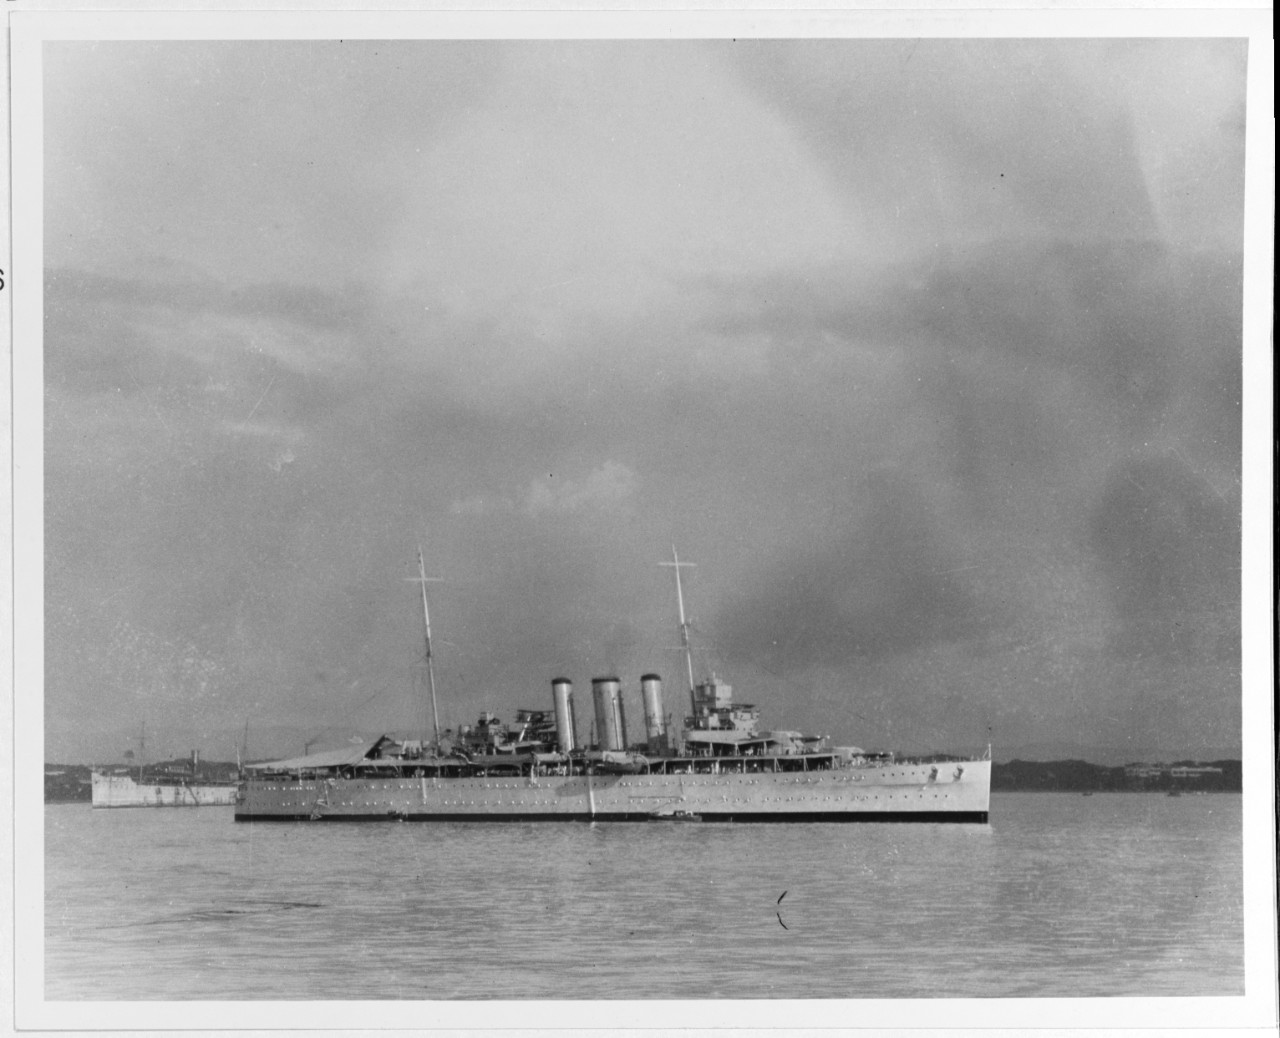 HMS KENT (British cruiser, 1926)